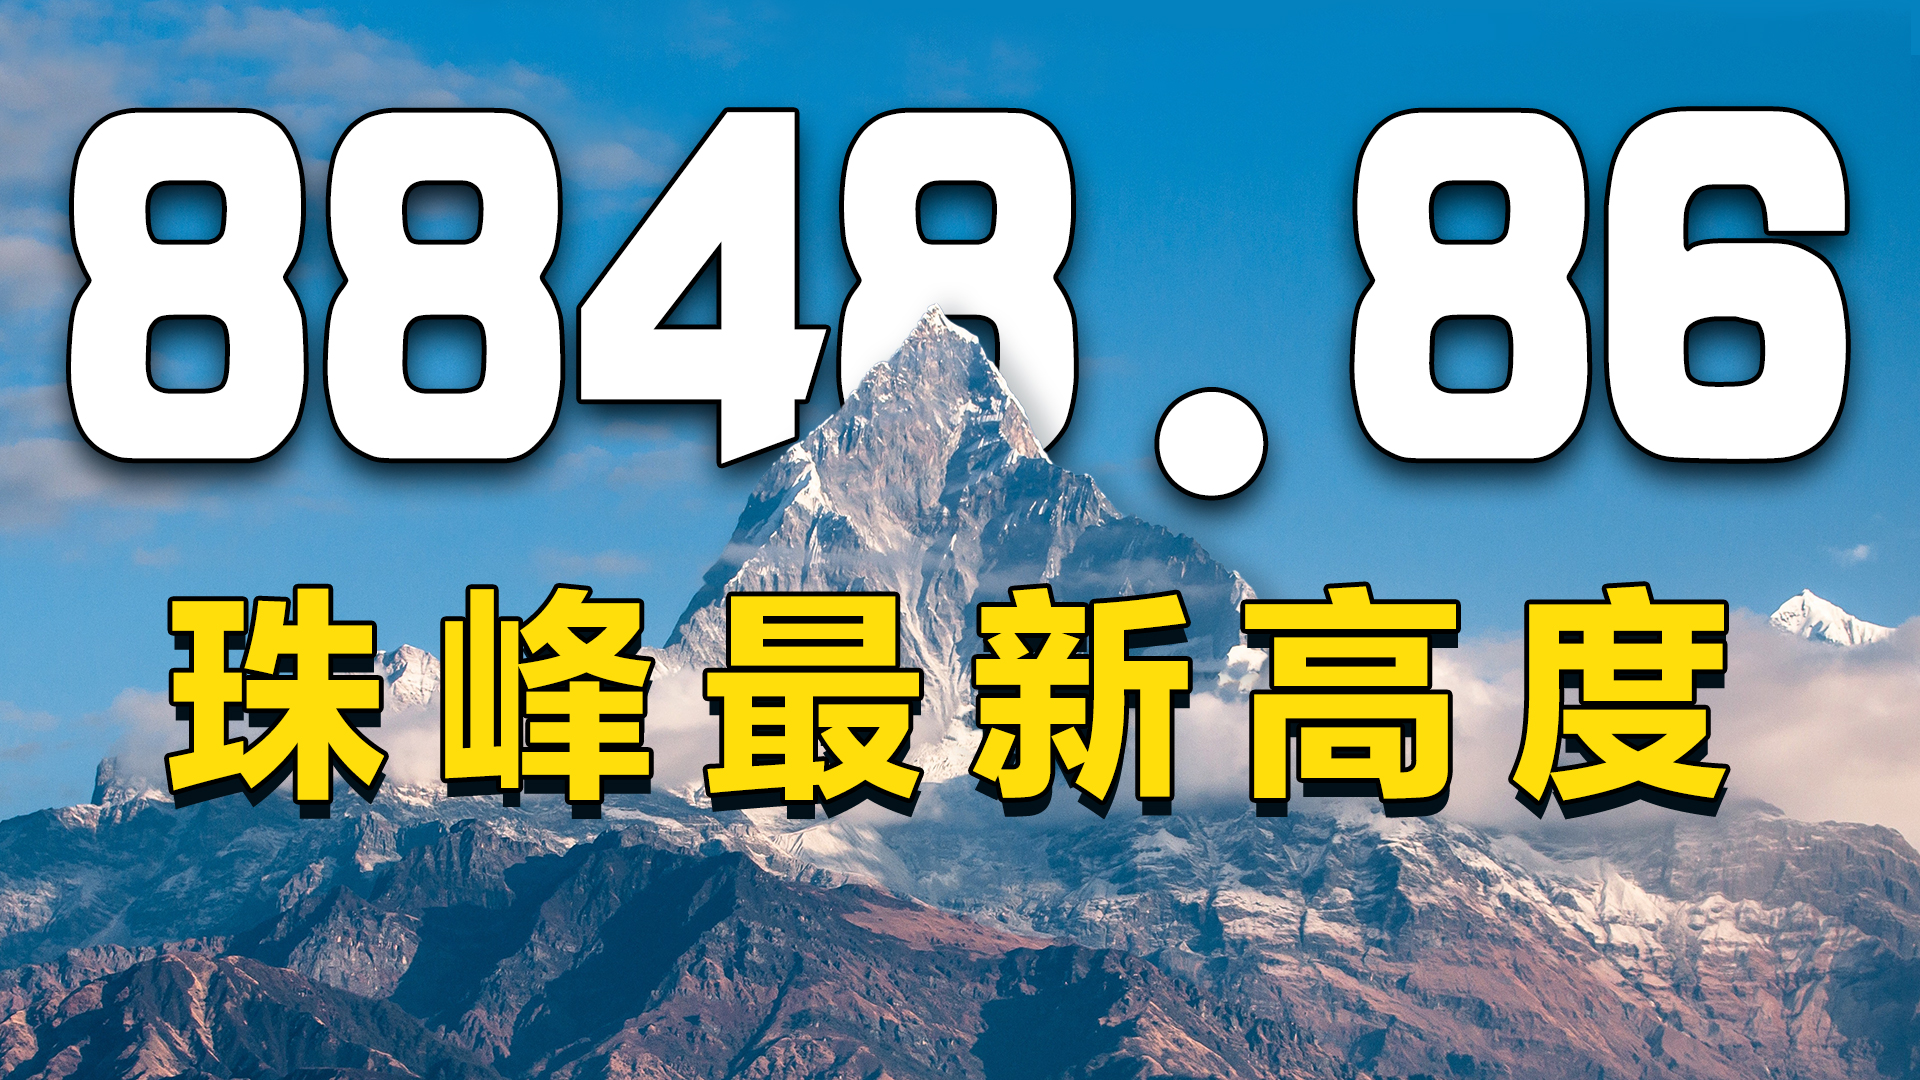 8848.86米，珠峰高度为啥要重新测量？